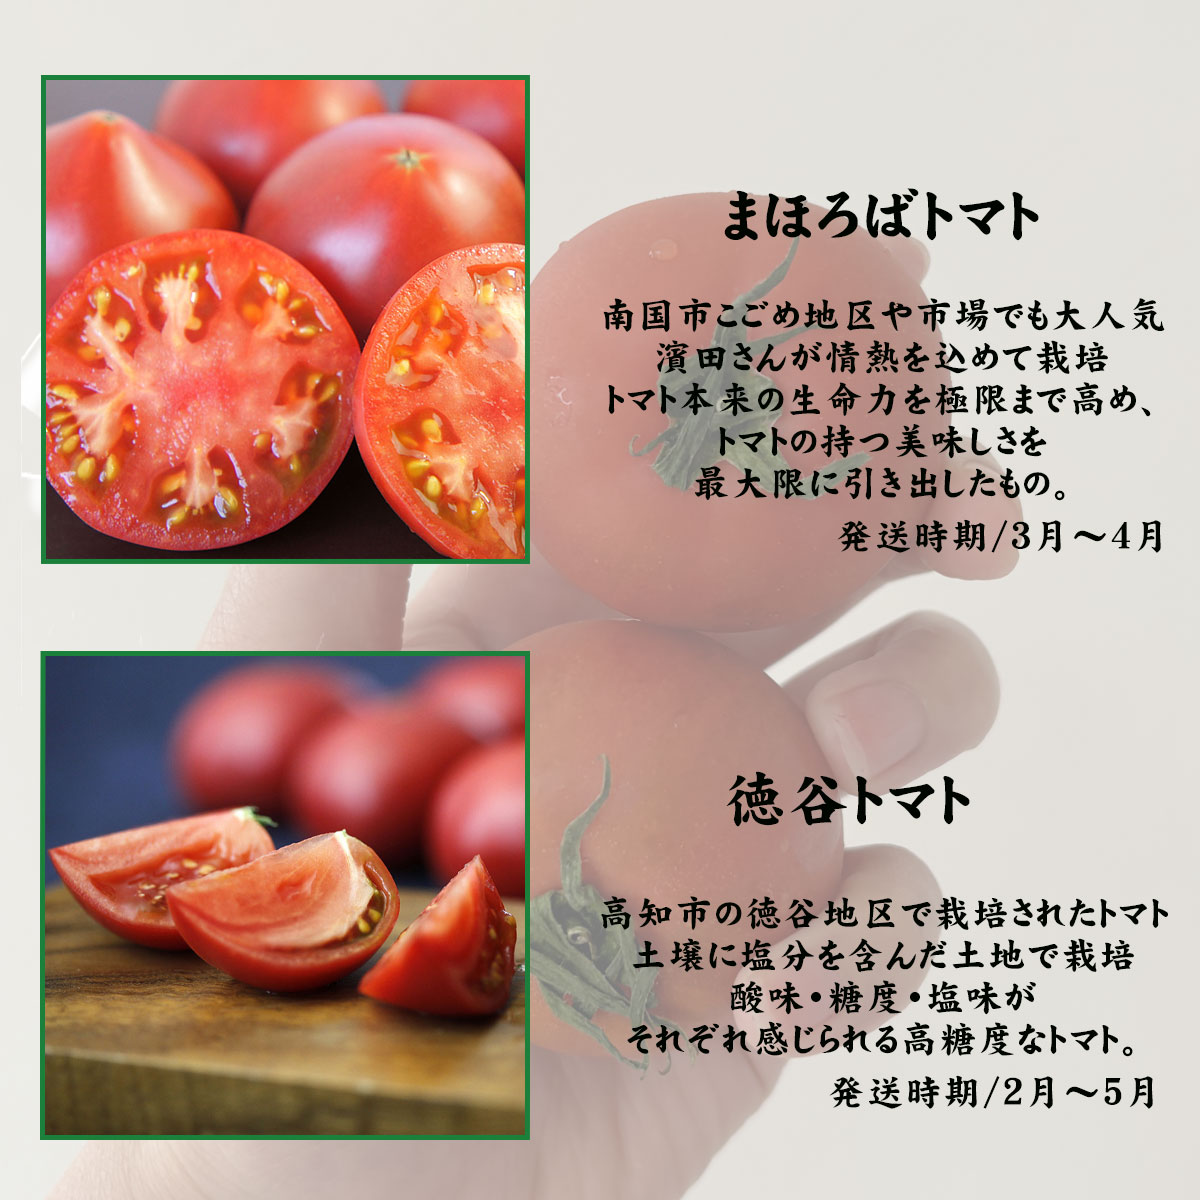 トマトの種類別